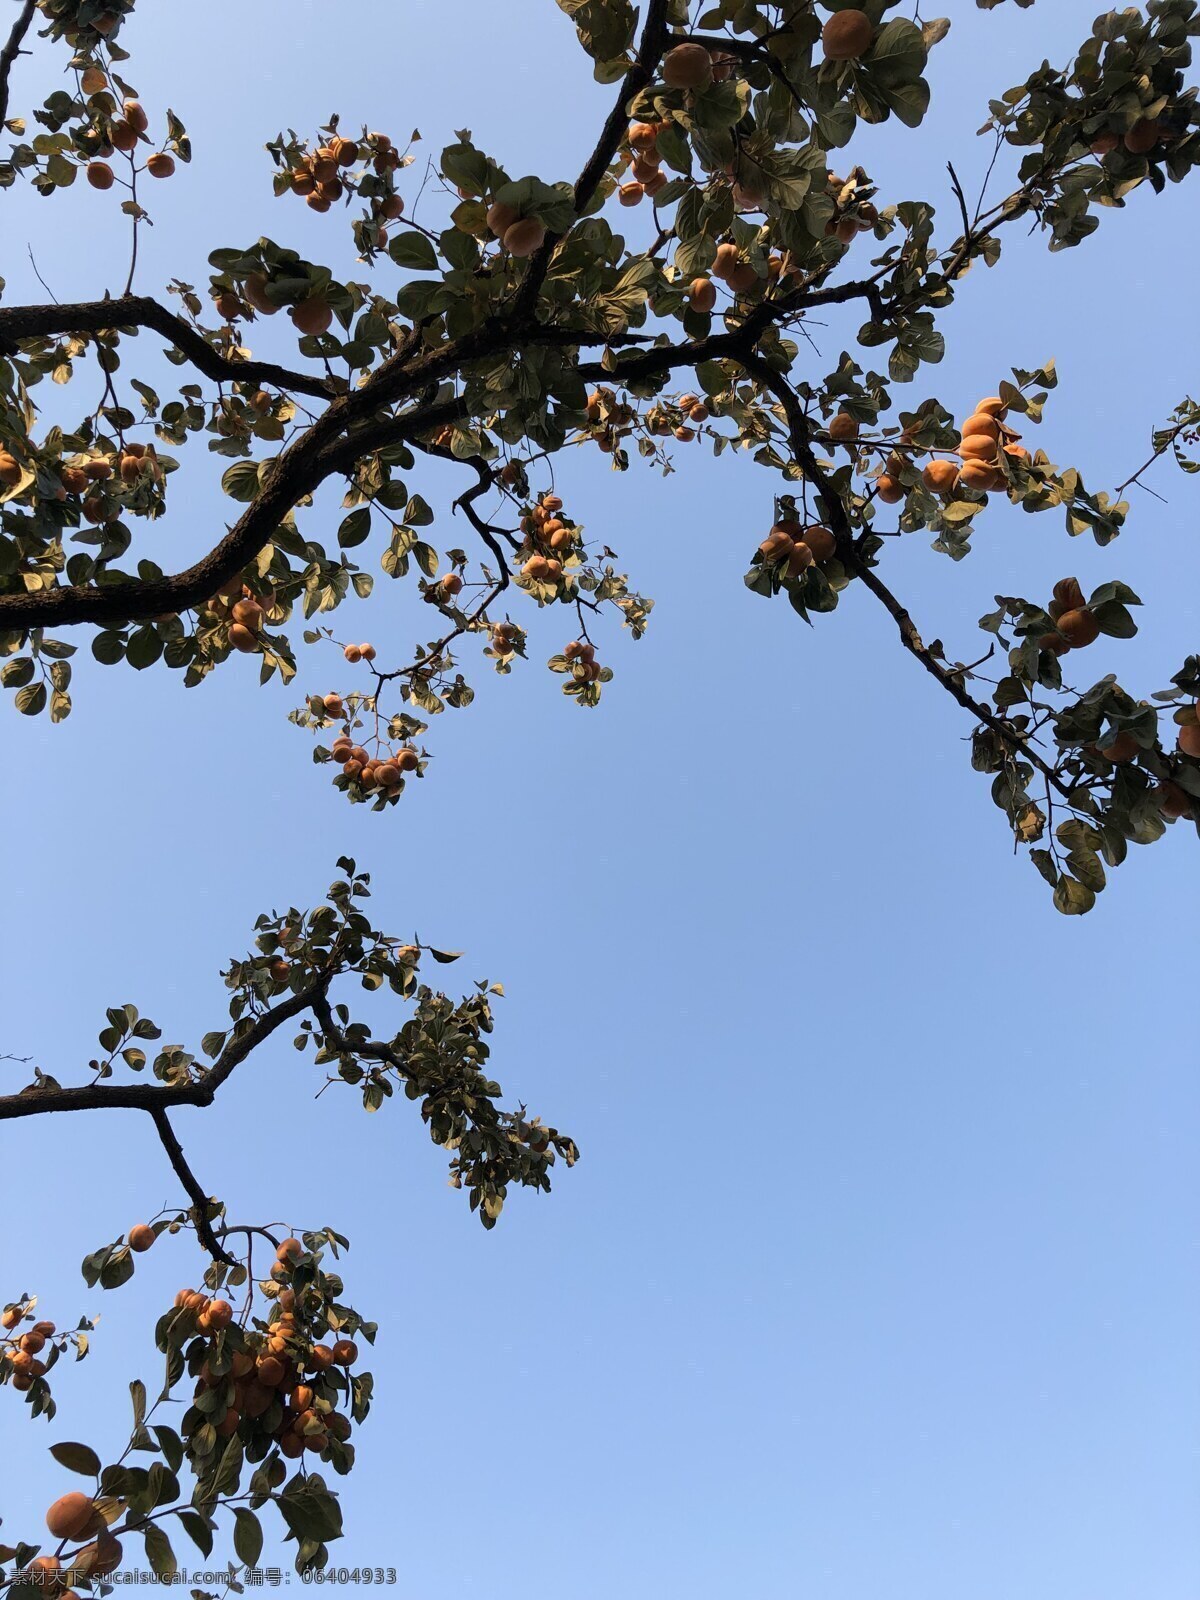 蓝天 下 柿子 树 柿子树 丰收的柿子 丰收的季节 秋天的硕果 新鲜柿子 自然景观 自然风景